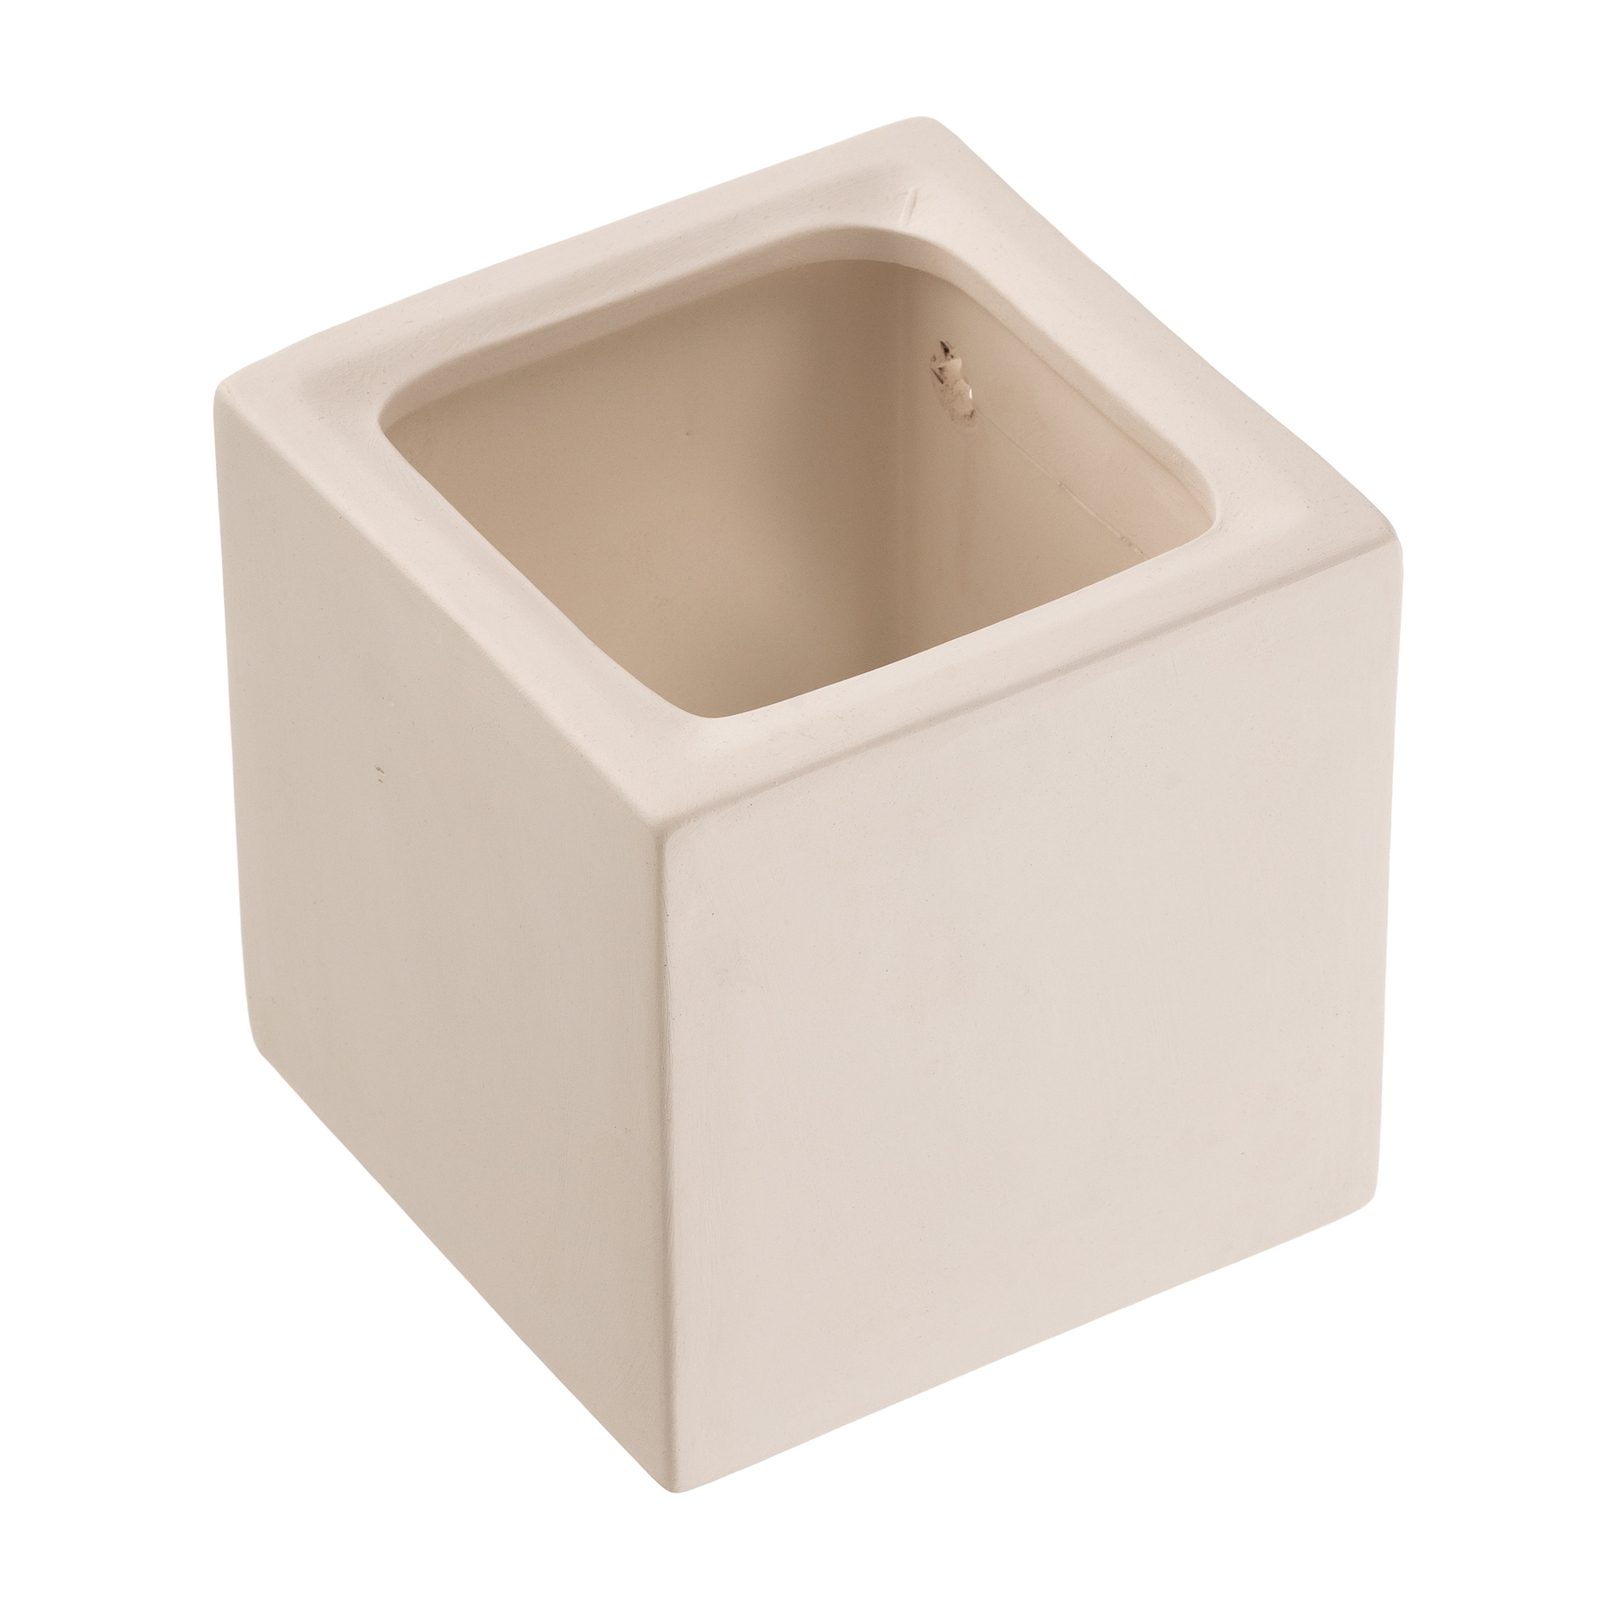 Cube væglampe up/down af keramik, hvid